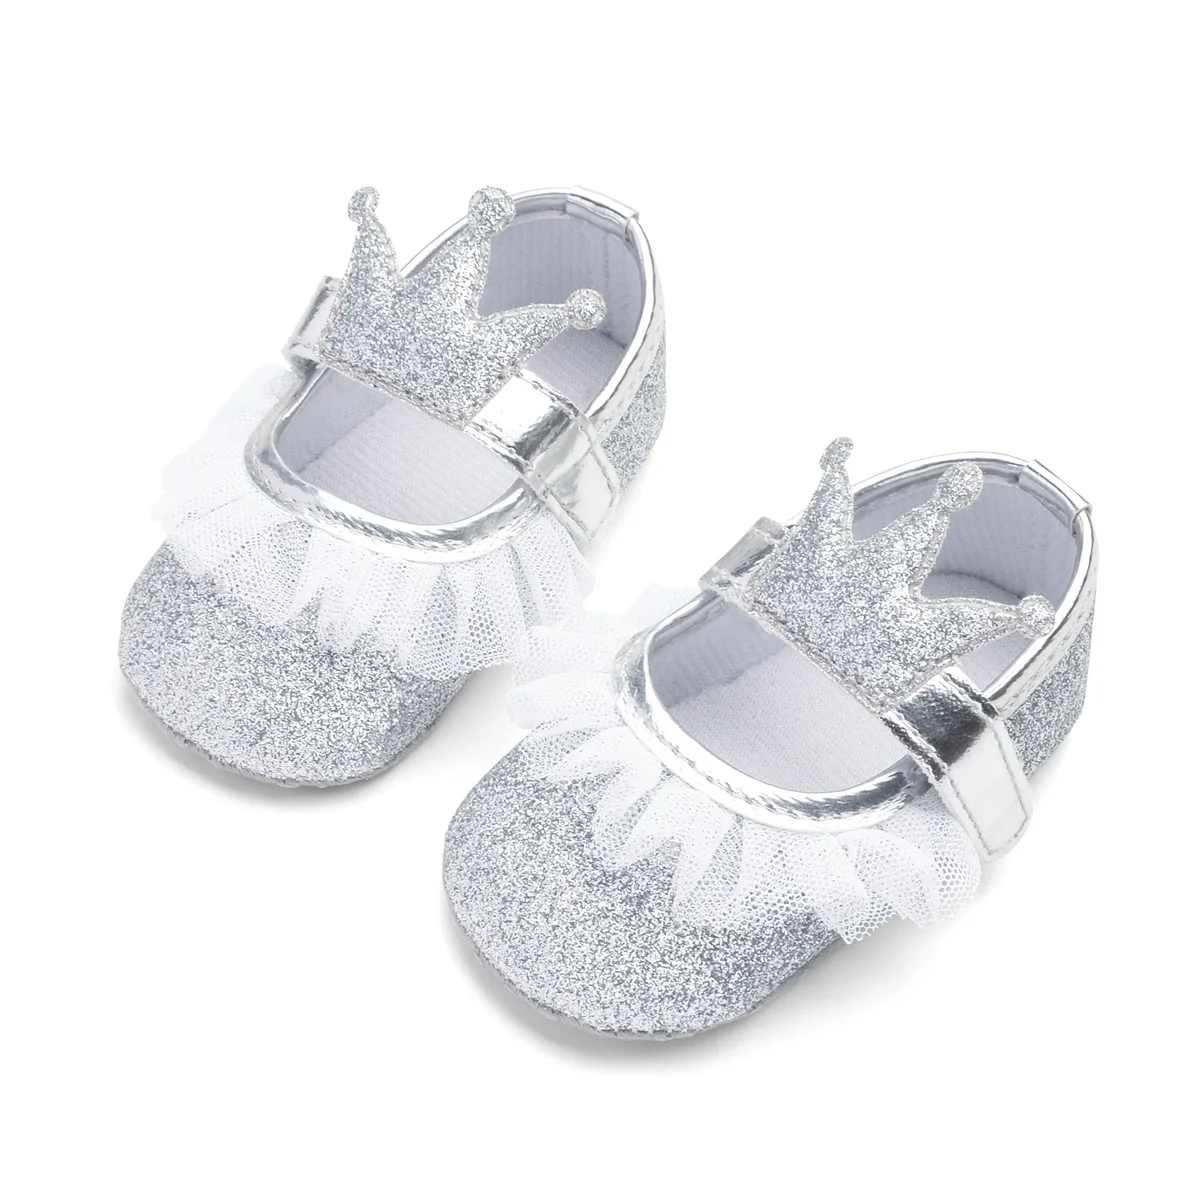 Новорожденная вечерние Вечеринка принцесса bling обувь Кружева Корона Блеск обувь для младенцев Bebe милые Prewalker нескользящая Мягкая подошва кроссовки обувь - Цвет: Серебристый